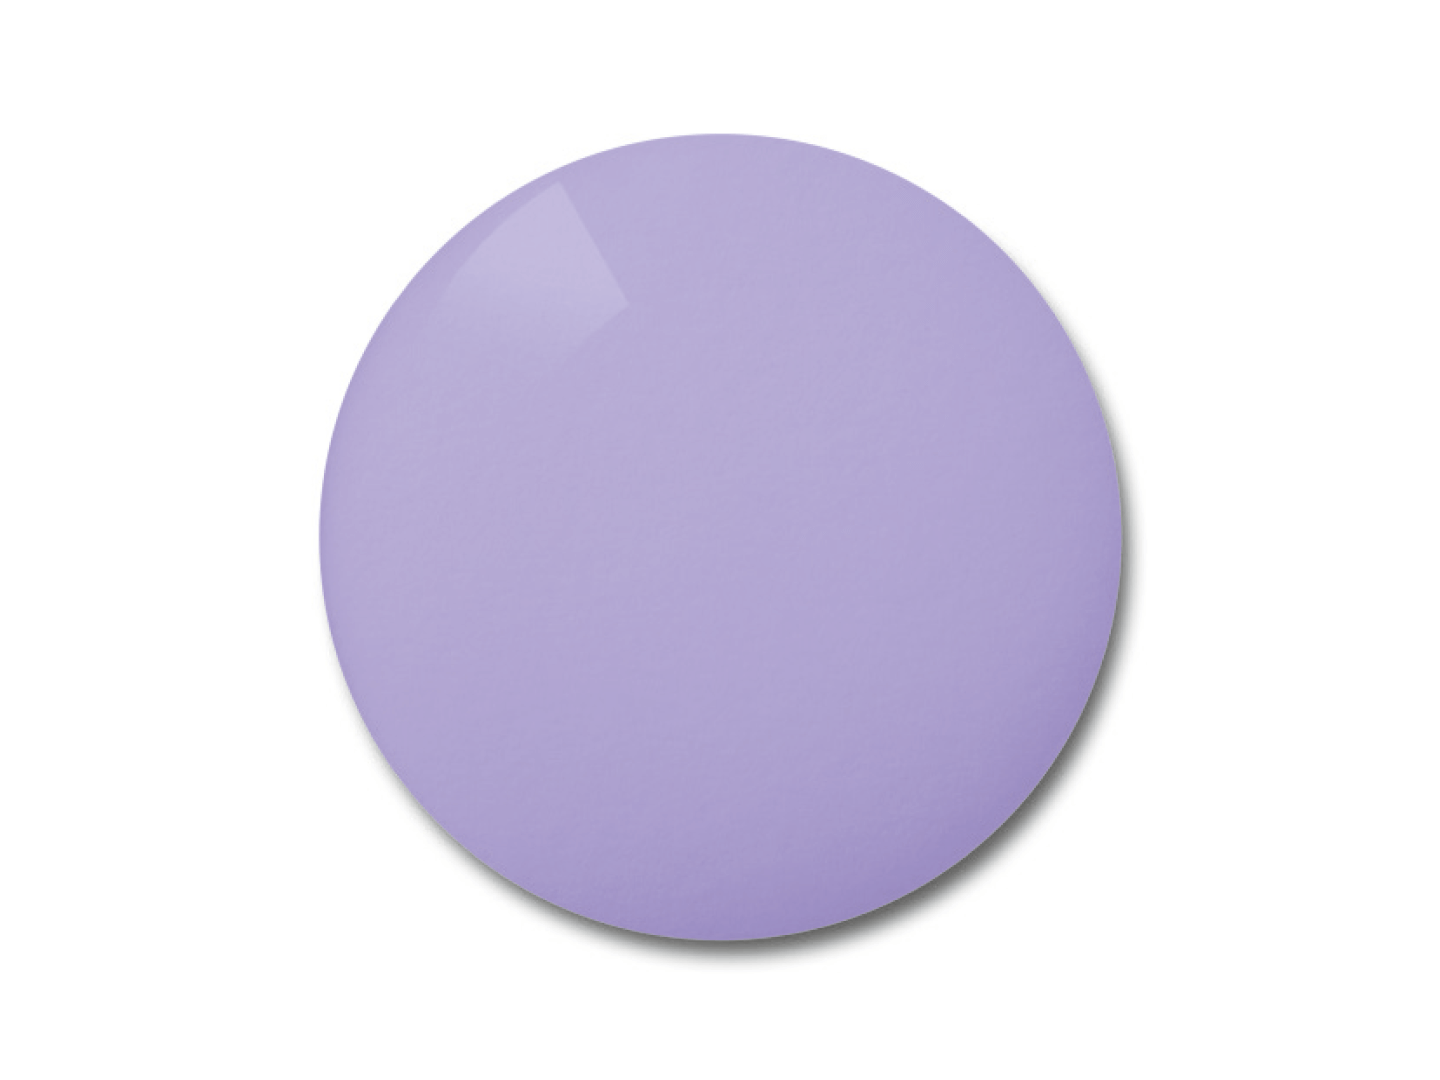 Exemplu de culoare pentru nuanța de lentile violet potrivită pentru ciclism. 